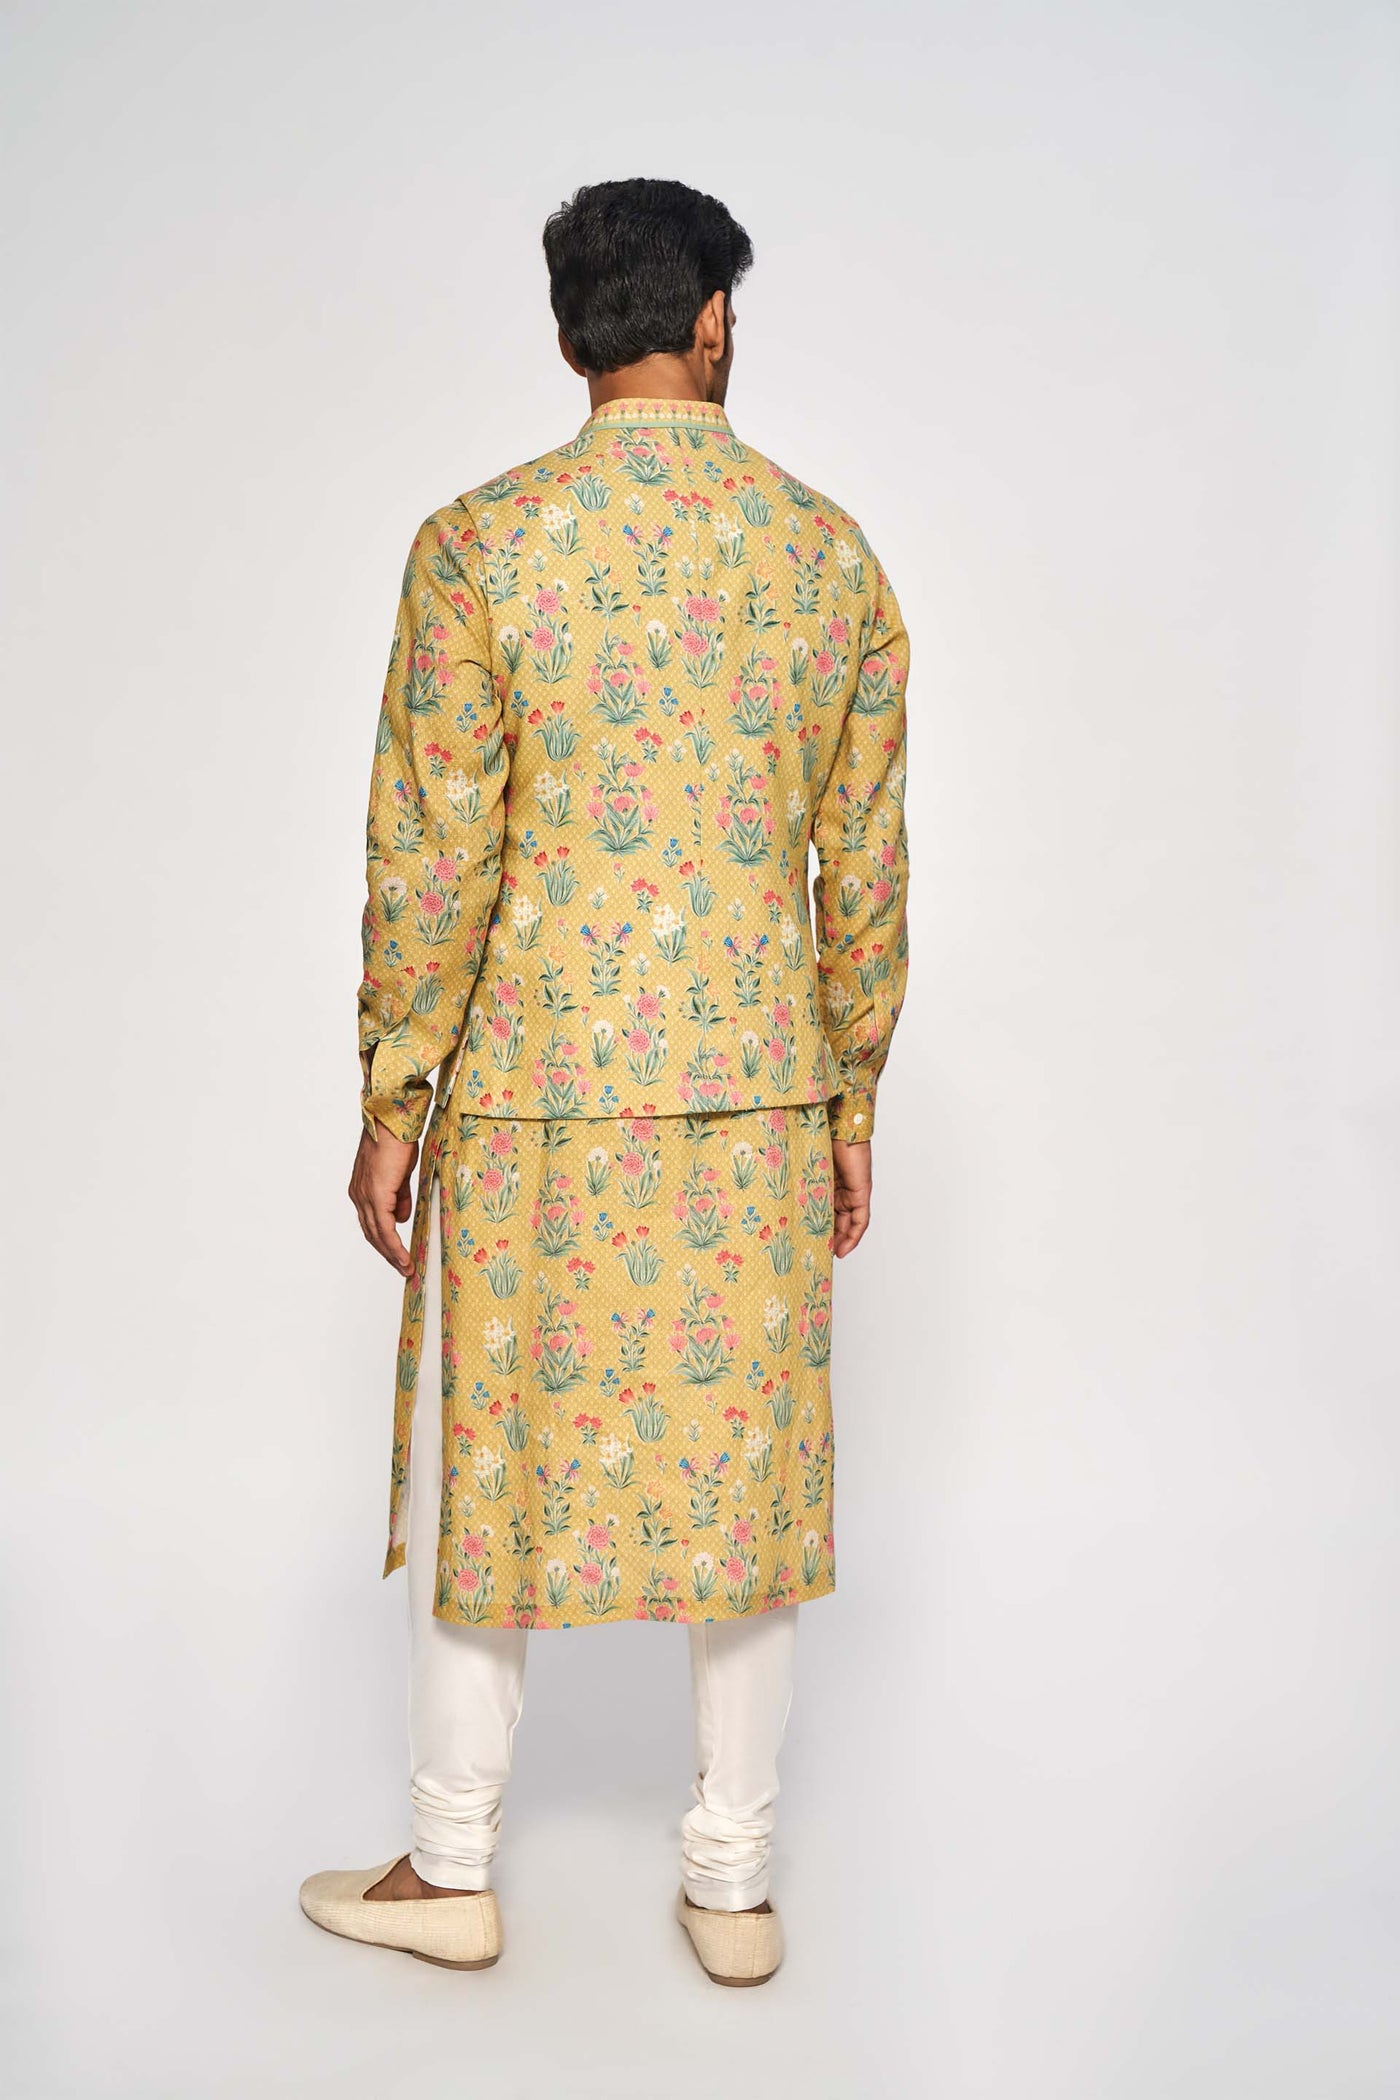 Anita Dongre menswear Jihan Bandi Mustard festive indian designer wear online shopping melange singapore